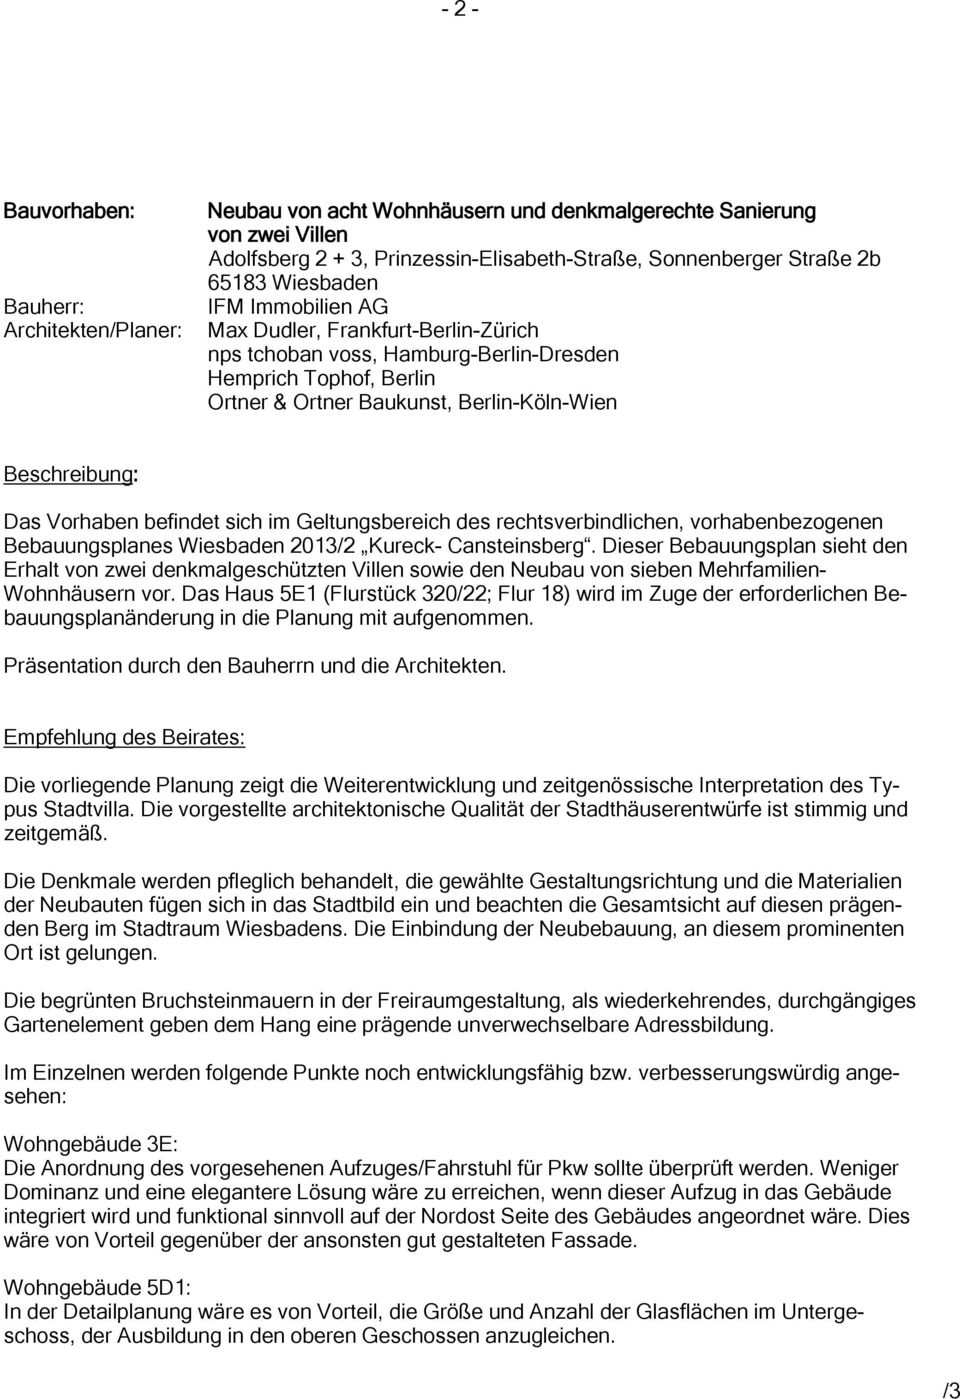 Geltungsbereich des rechtsverbindlichen, vorhabenbezogenen Bebauungsplanes Wiesbaden 2013/2 Kureck- Cansteinsberg.